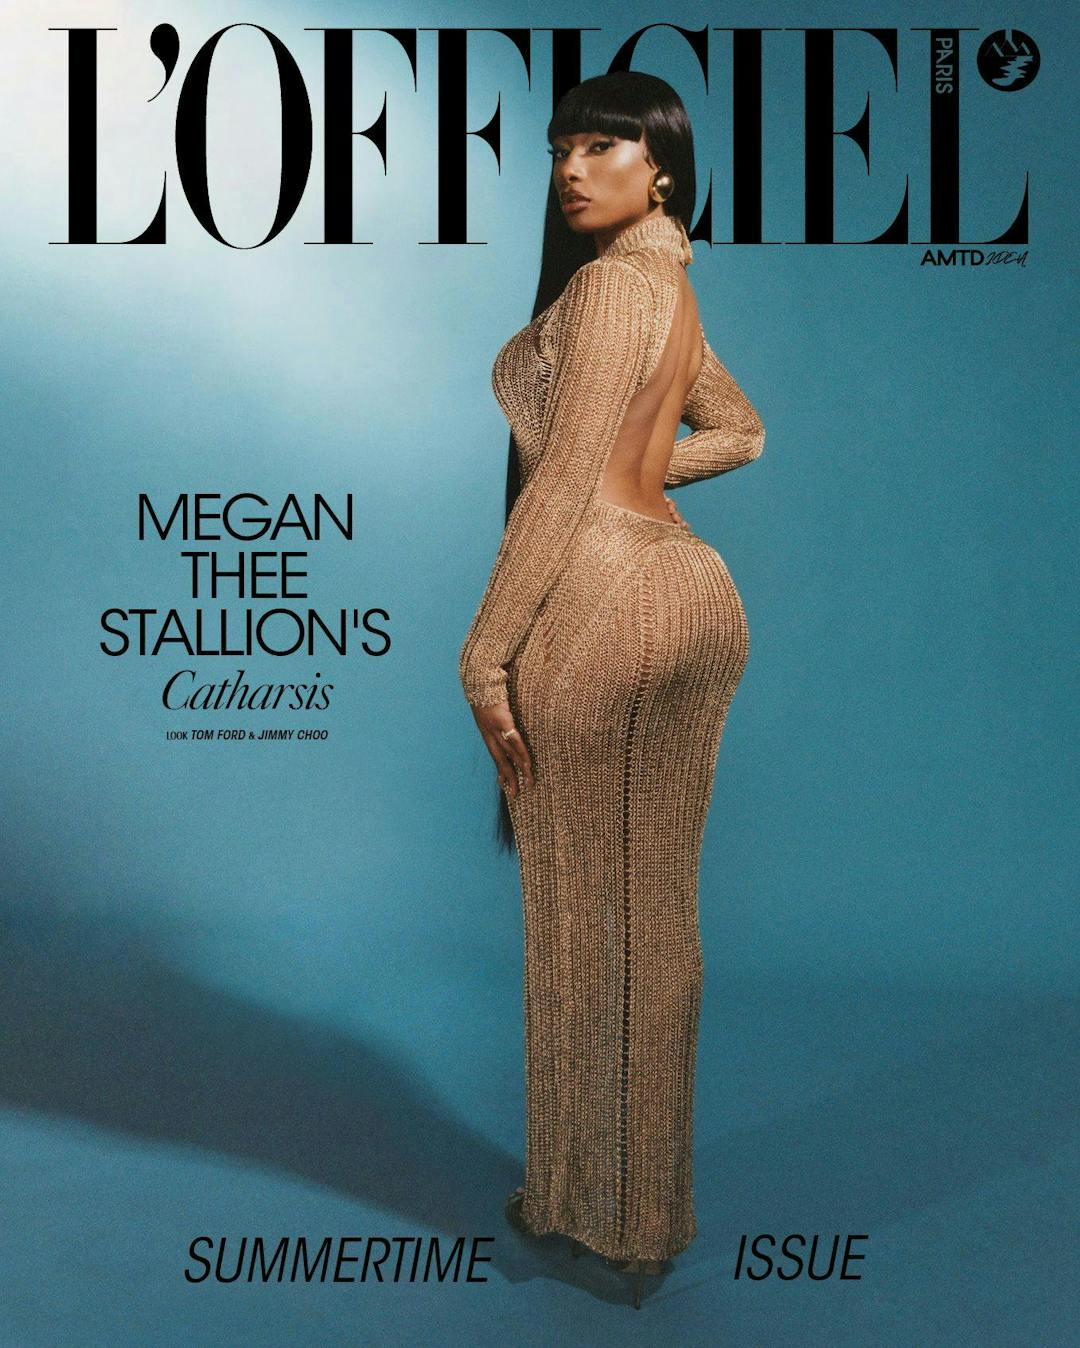 L'Officiel Paris - Issue 1065 - Megan Thee Stallion